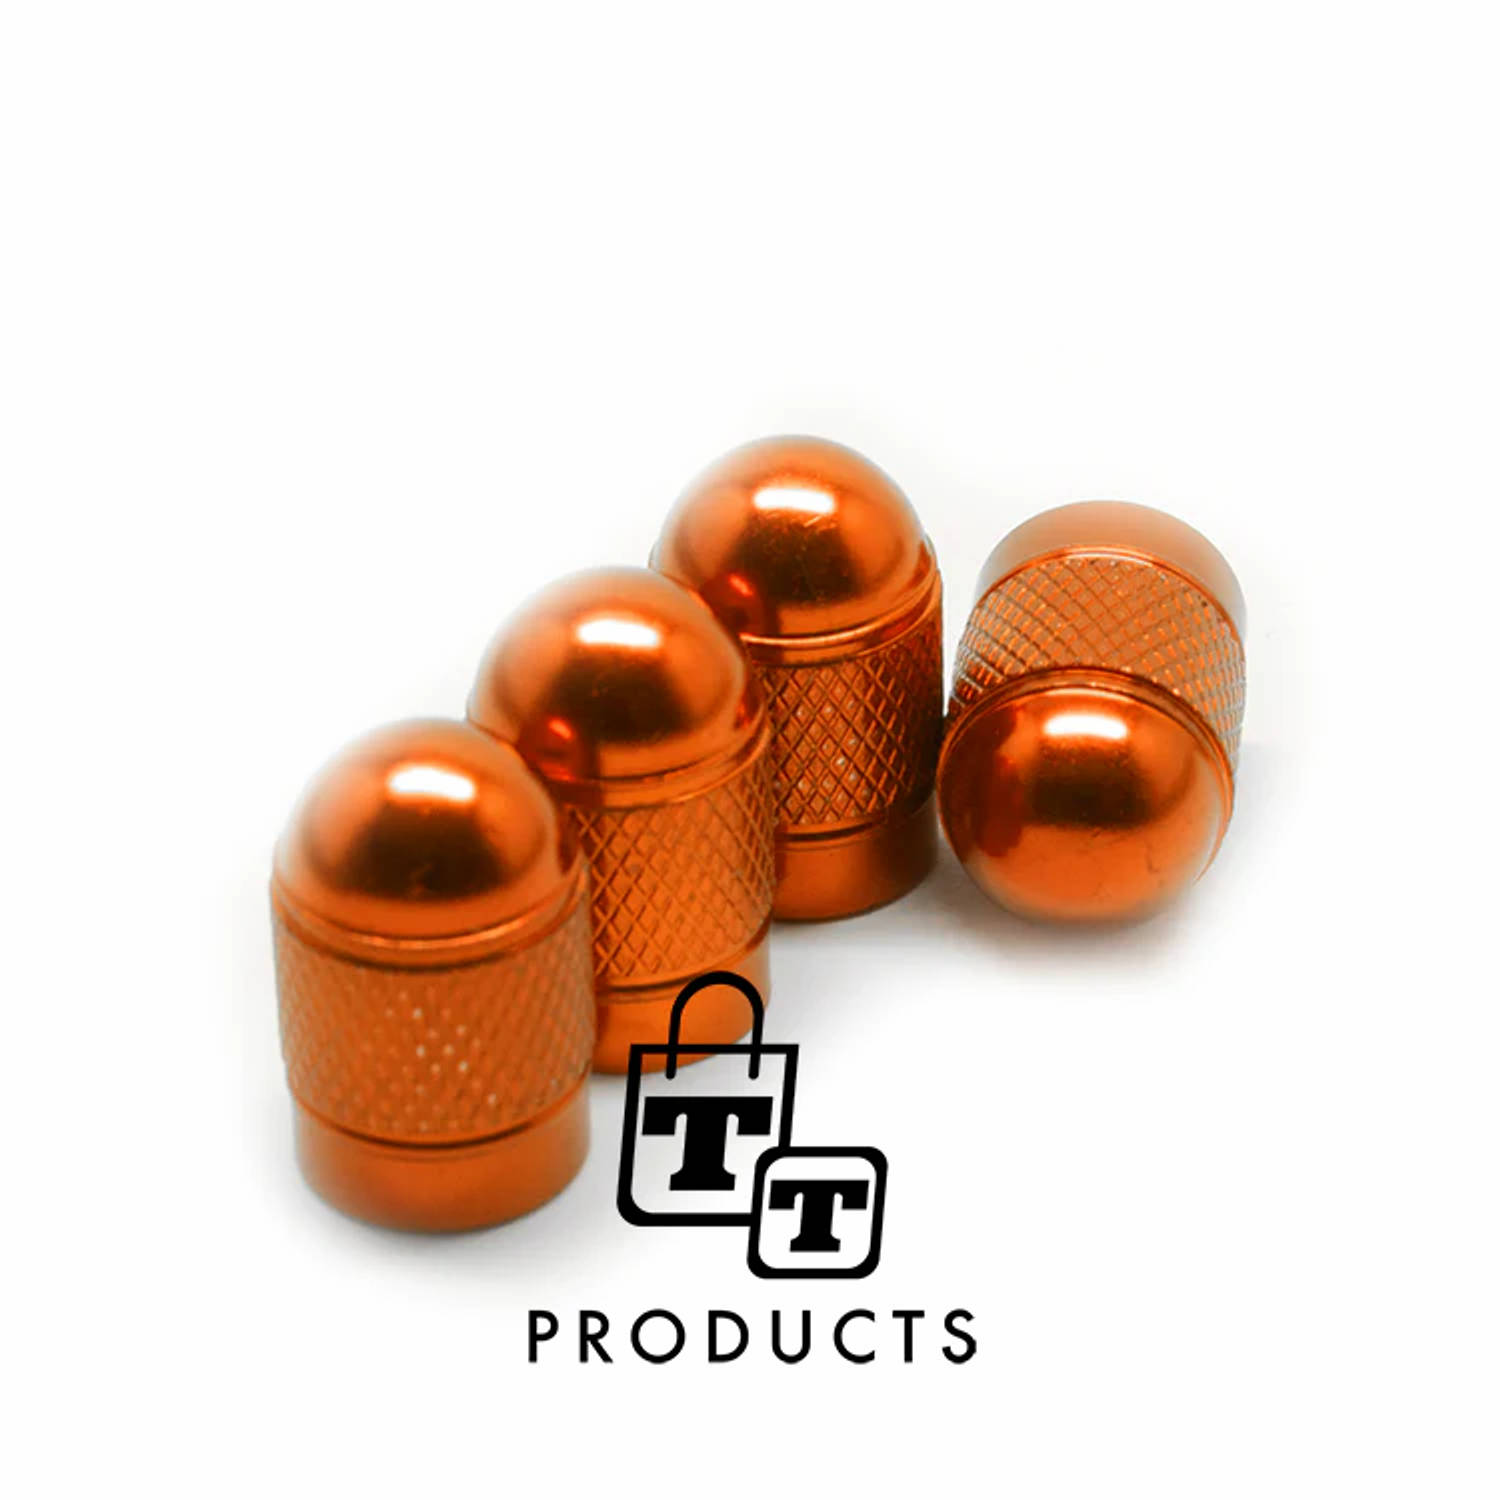 TT-products ventieldoppen Orange Bullets aluminium 4 stuks oranje - auto ventieldop - ventieldopjes